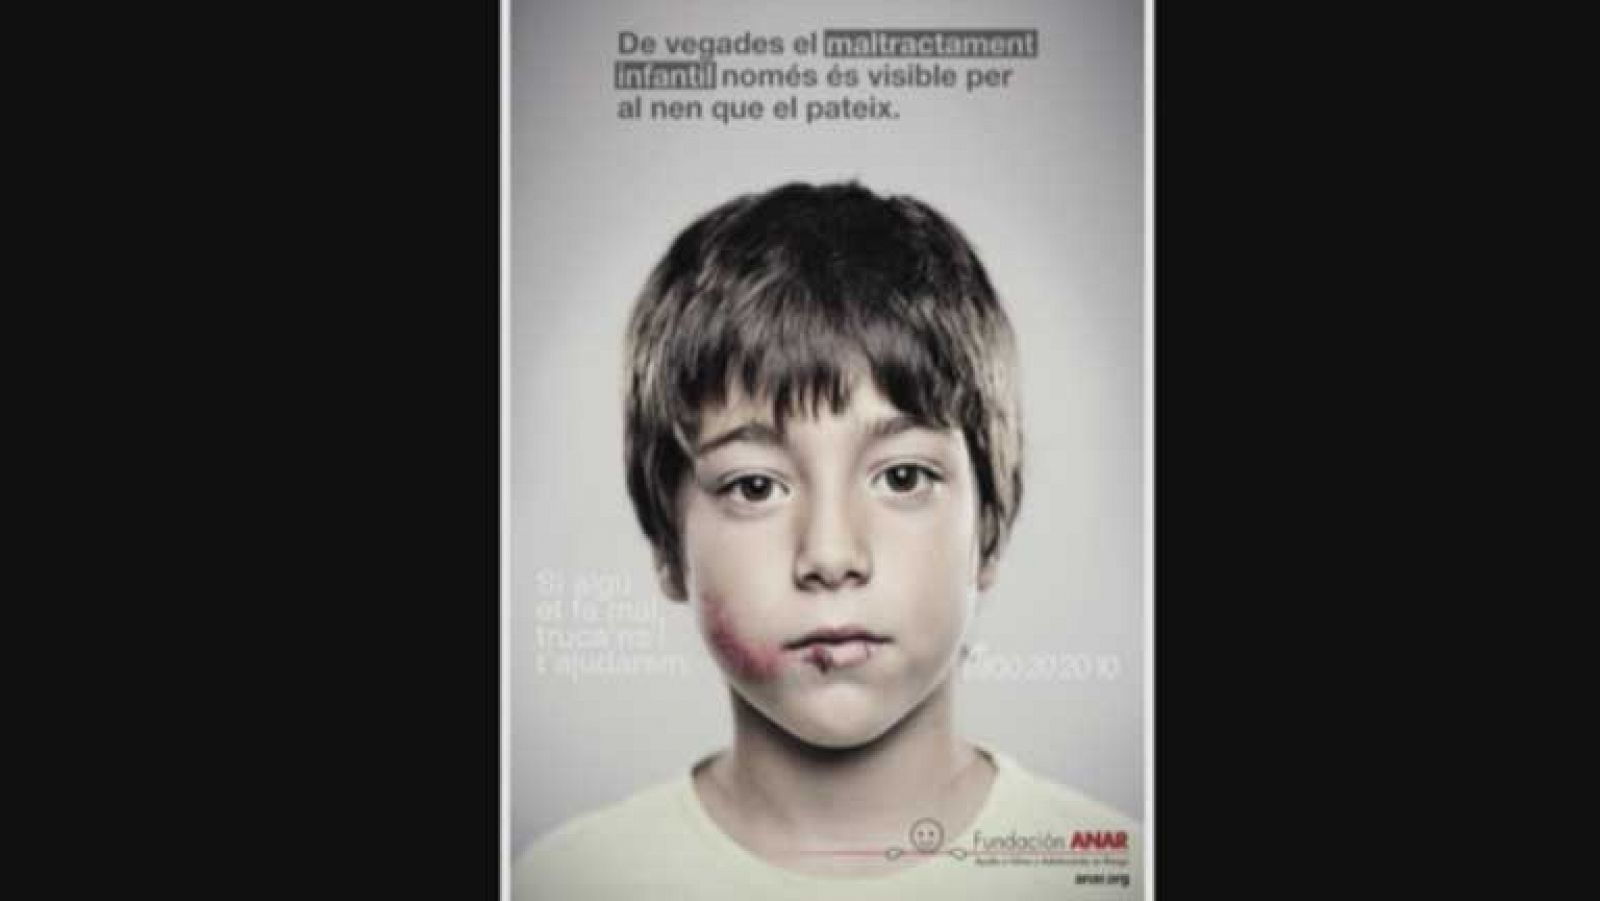  La violencia contra los niños ha aumentado en España en el último año más de un 13 por ciento